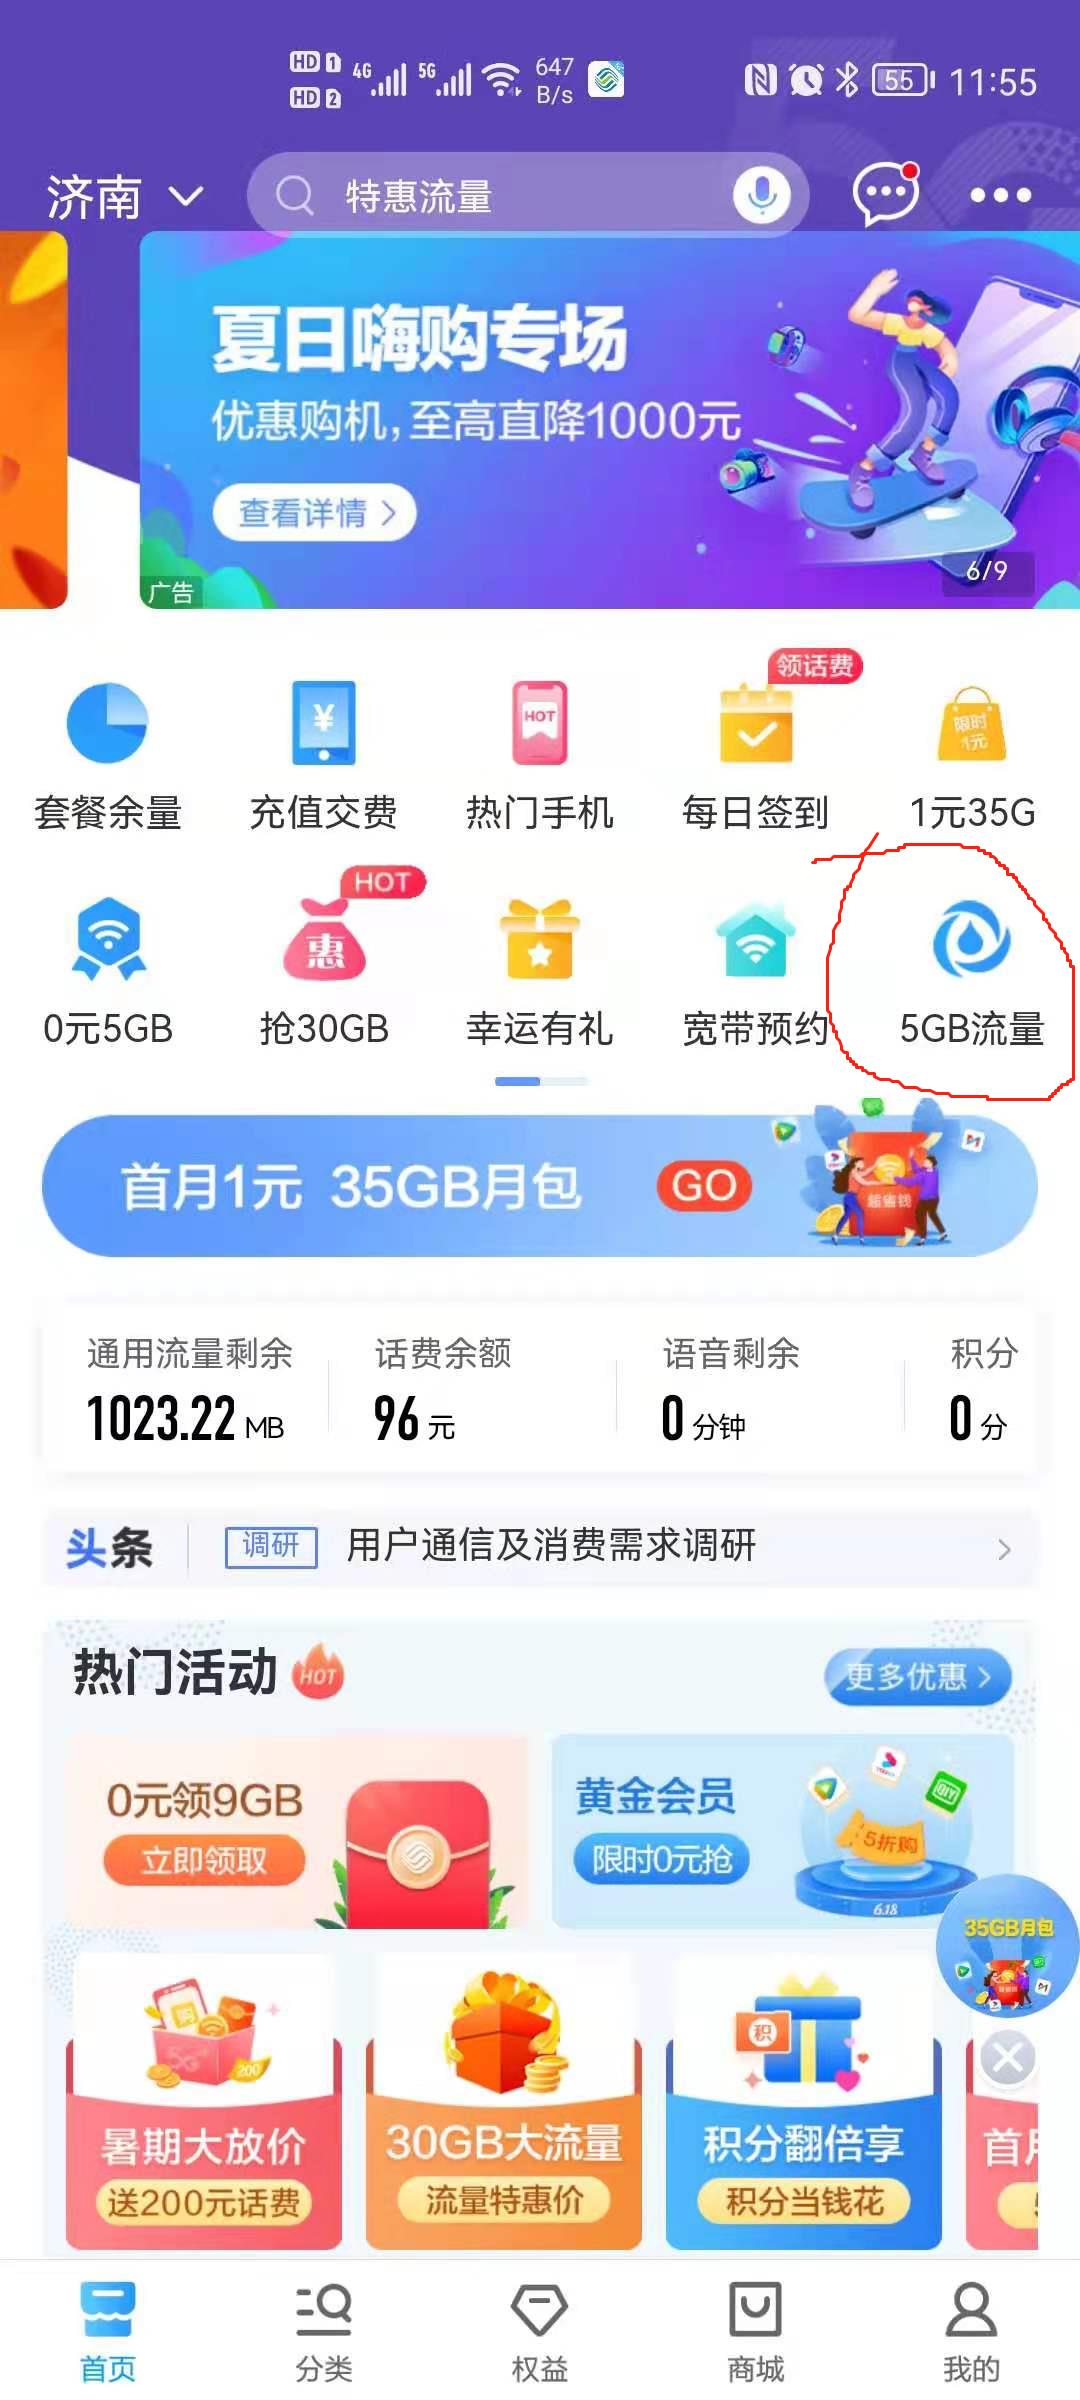 中国移动每个月5元=5G-期限一年-文末送话费彩蛋-惠小助(52huixz.com)